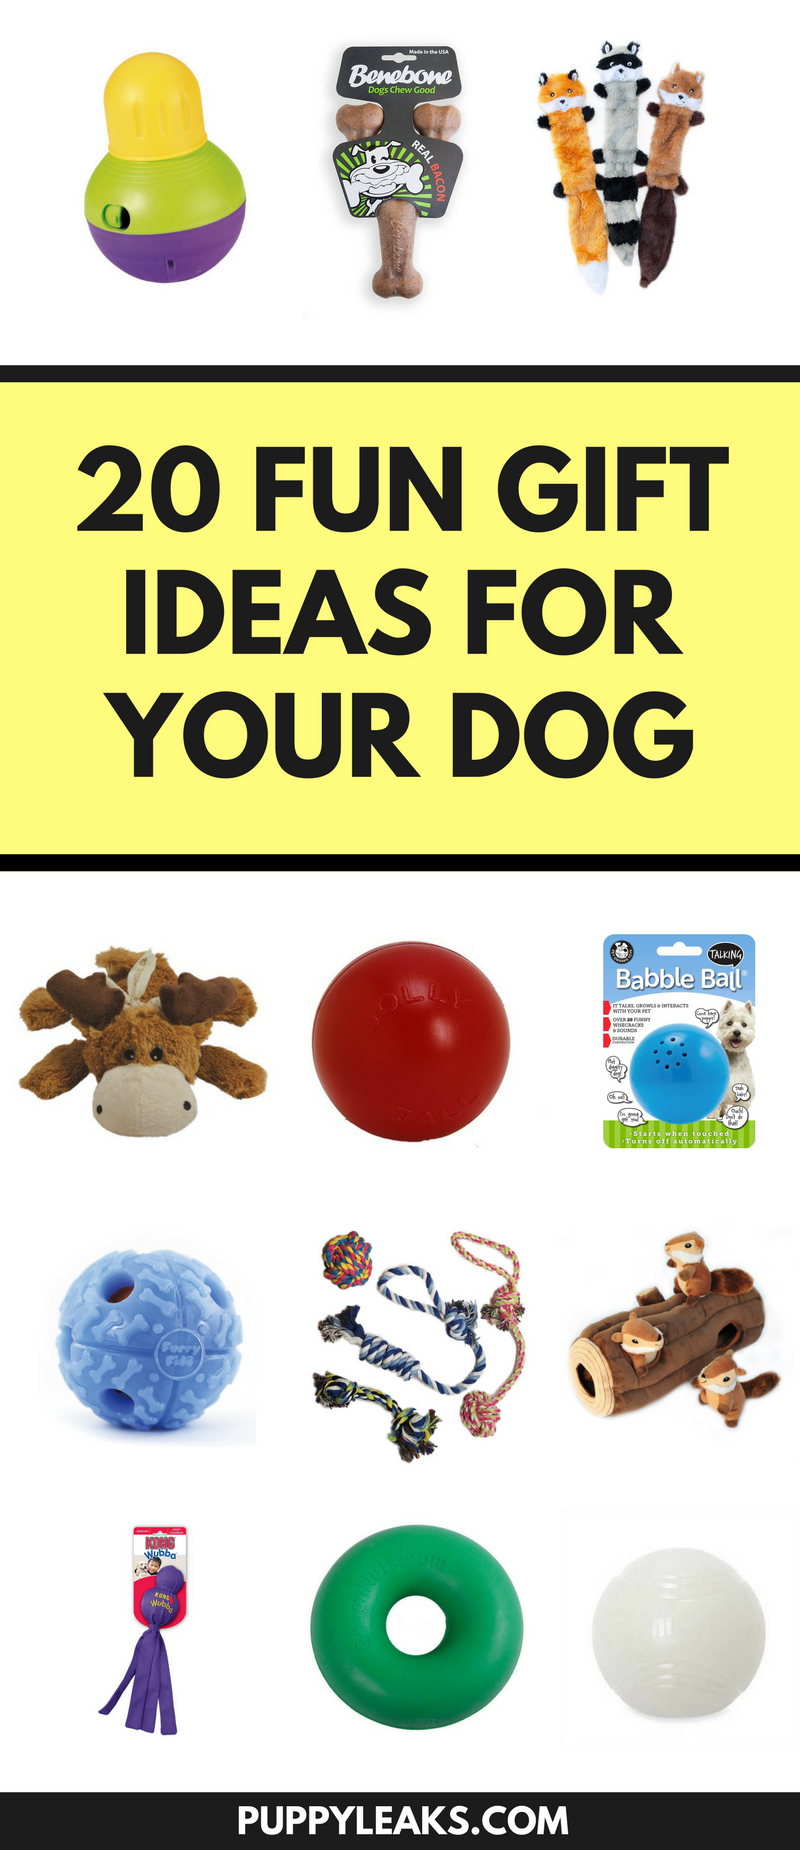 20 забавных идей подарков на Рождество для вашей собаки